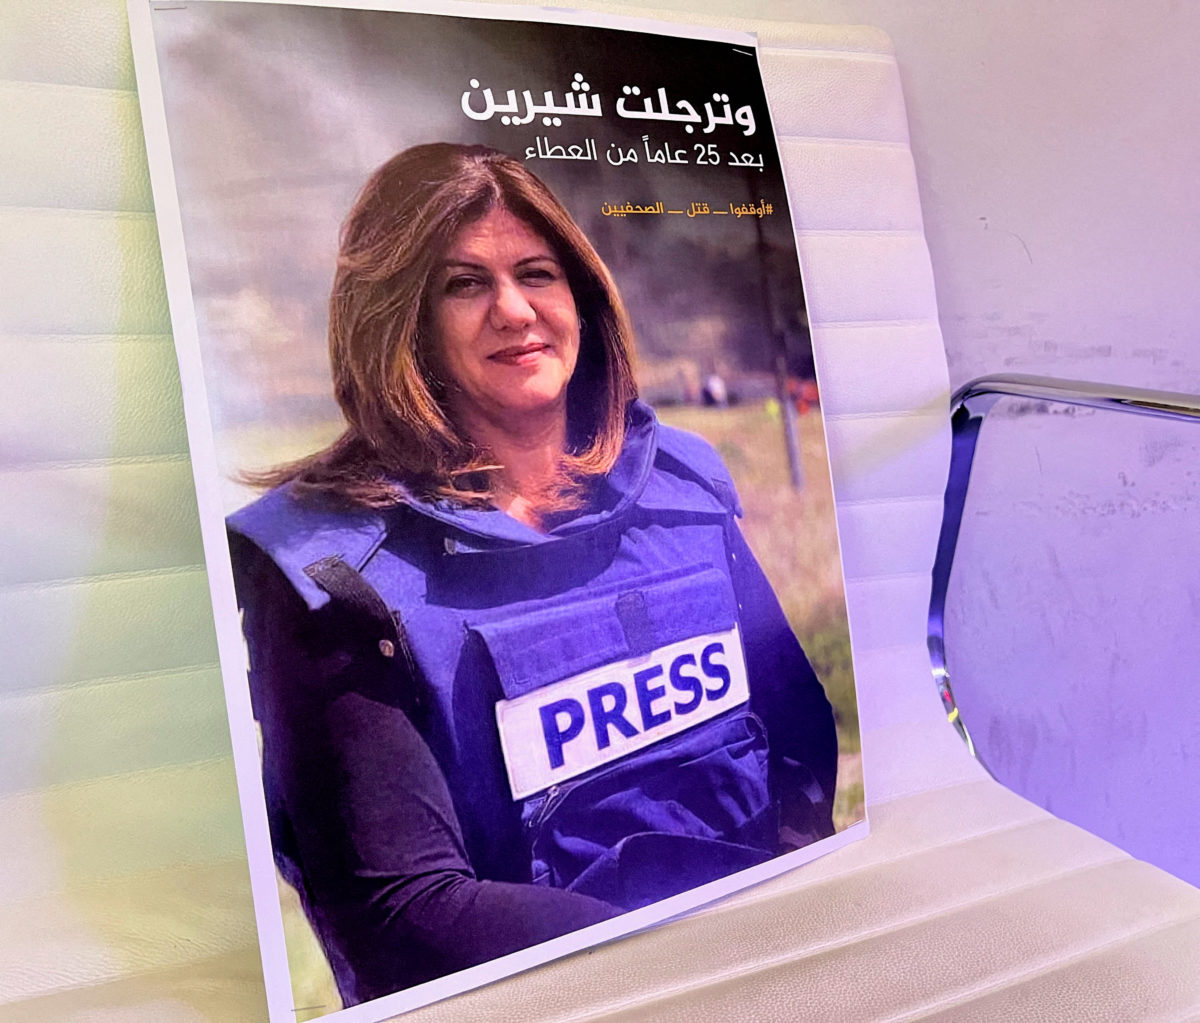 Palestina memberikan peluru yang menewaskan jurnalis Al Jazeera kepada ahli forensik AS